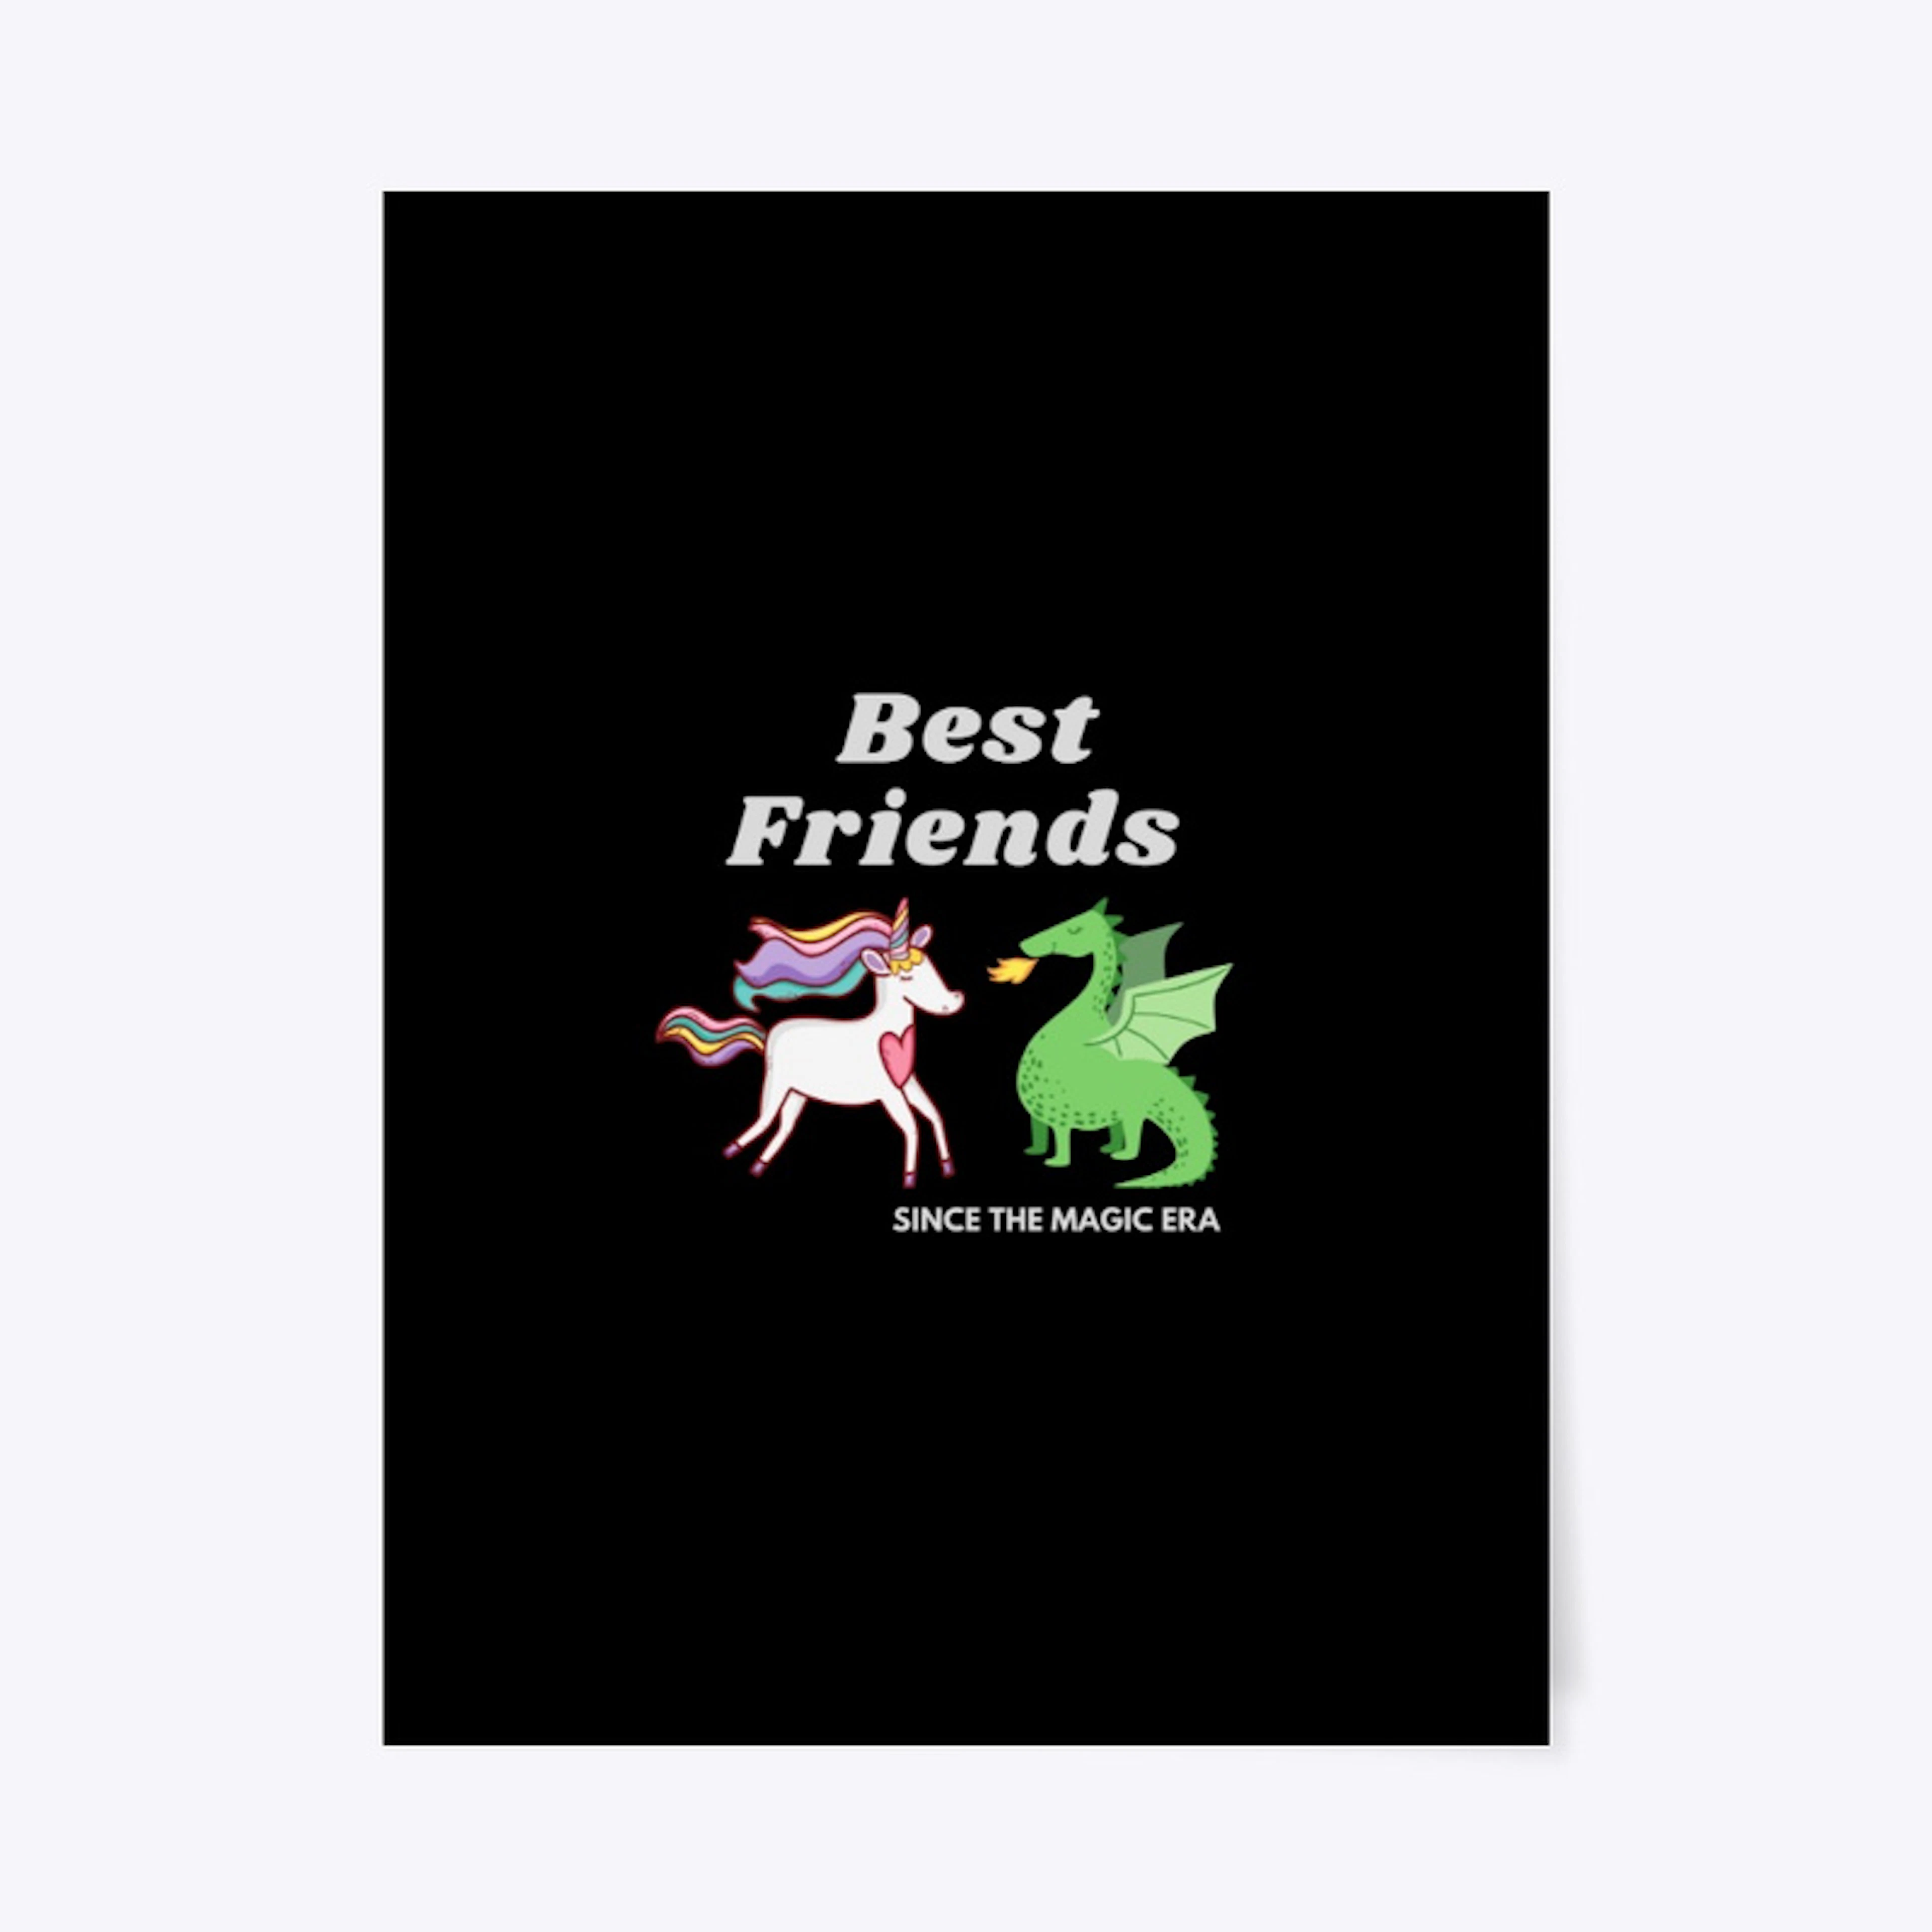 Best Friends Since the Magic era